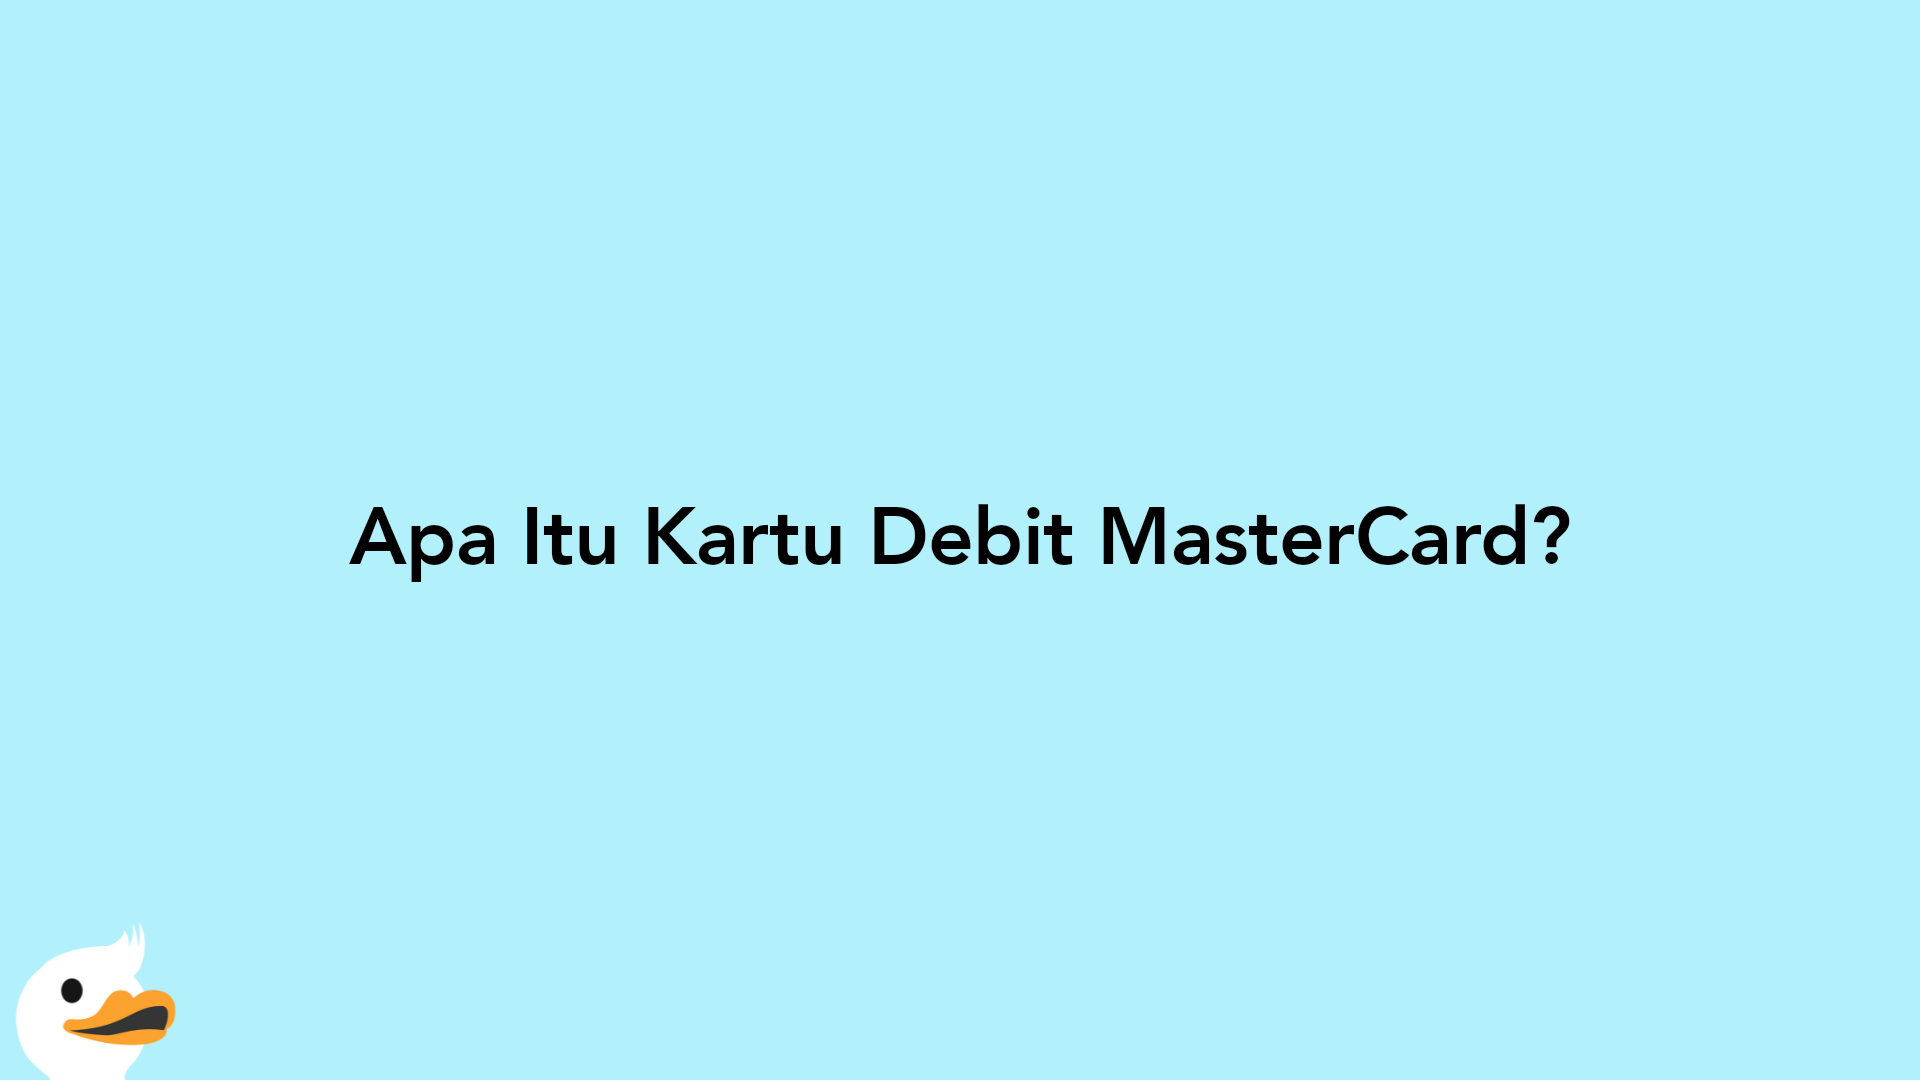 Apa Itu Kartu Debit MasterCard?